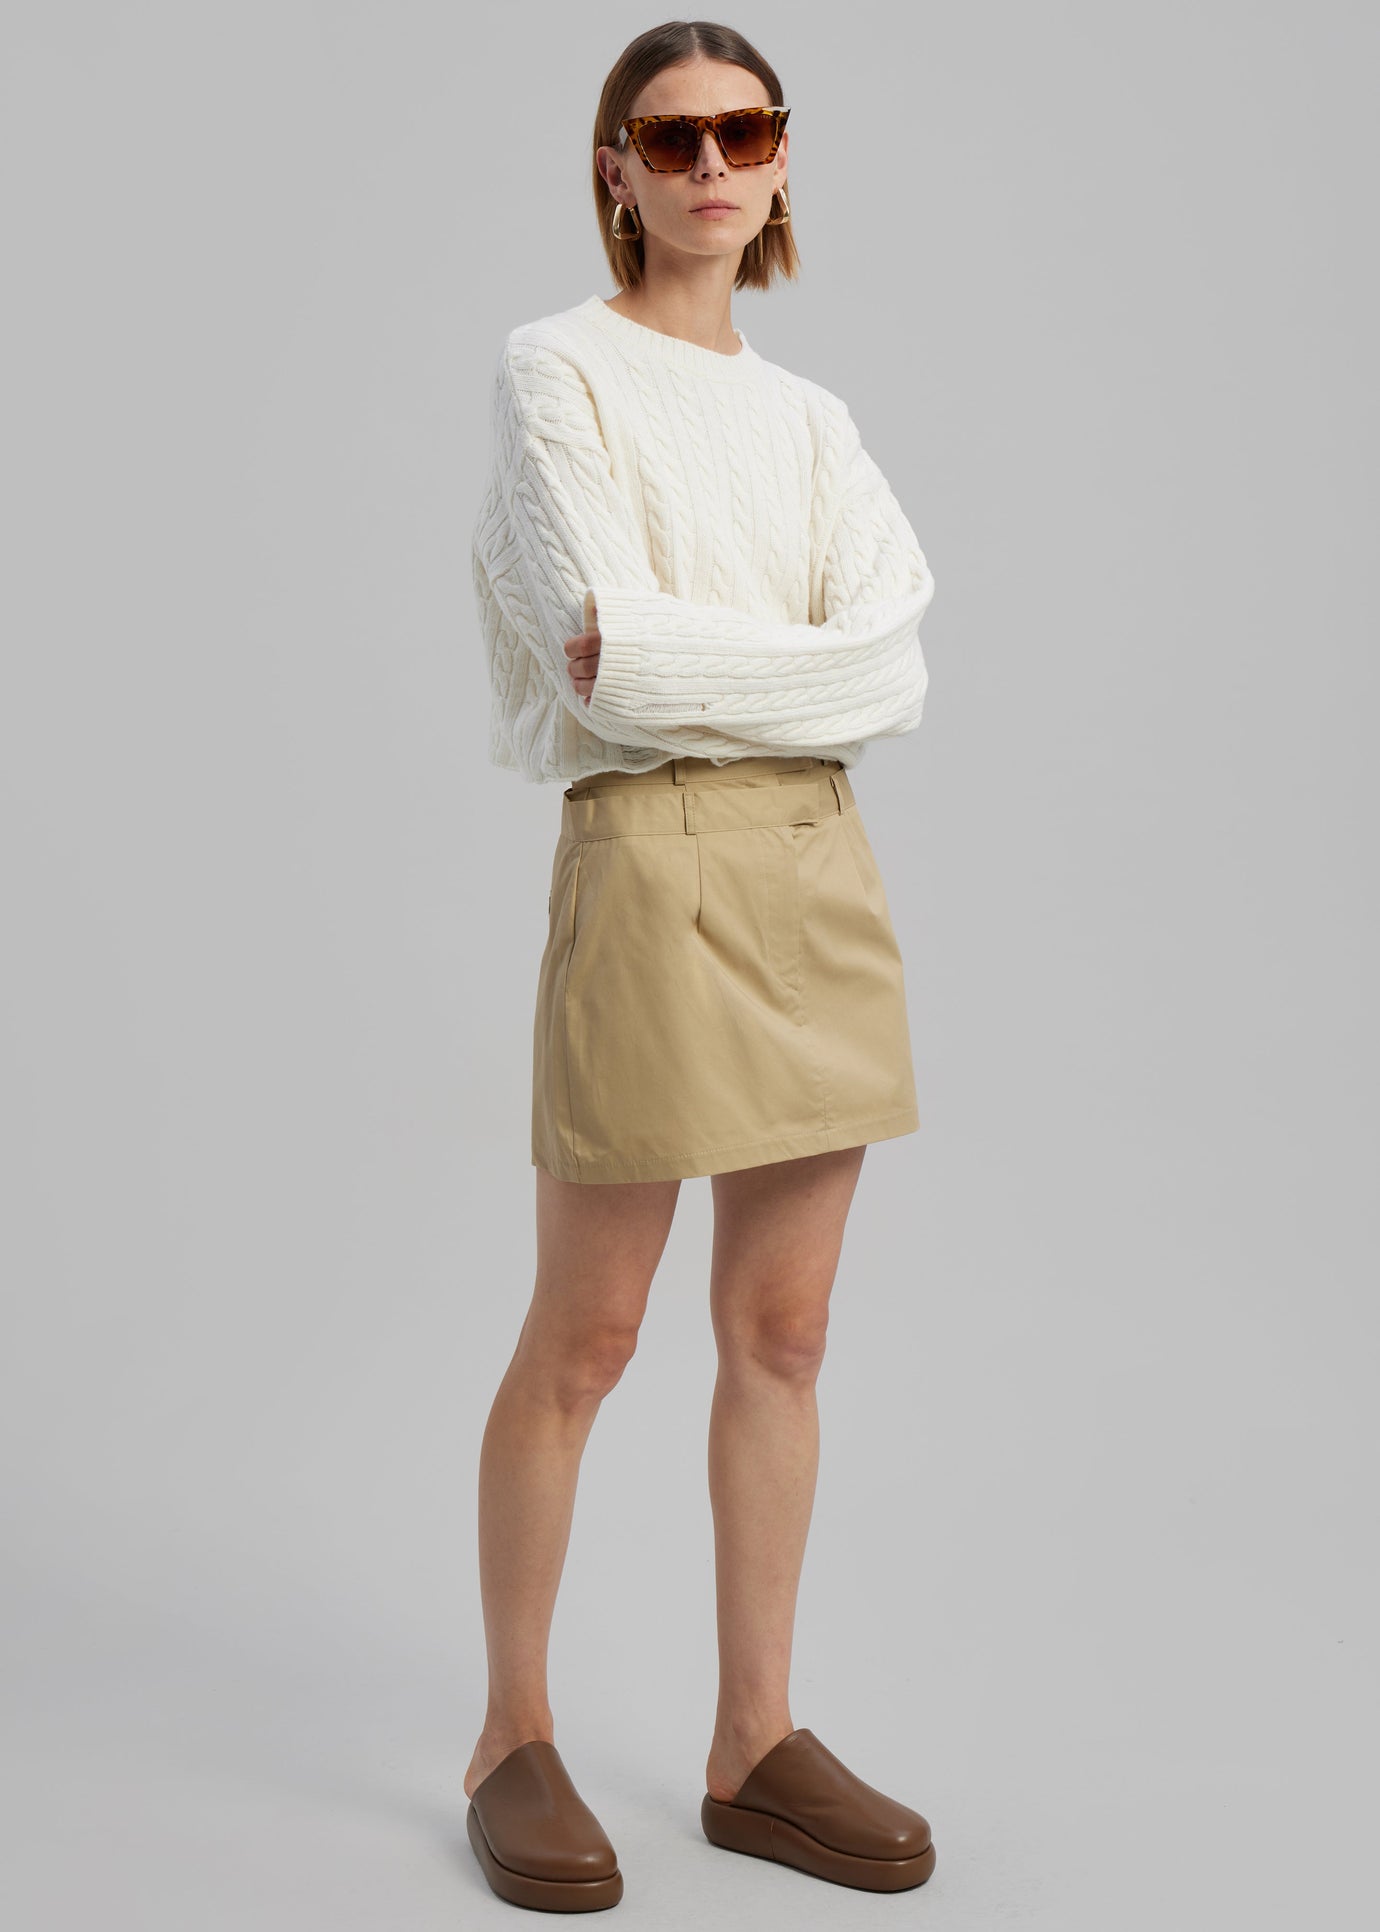 Anita Mini Skirt - Tan